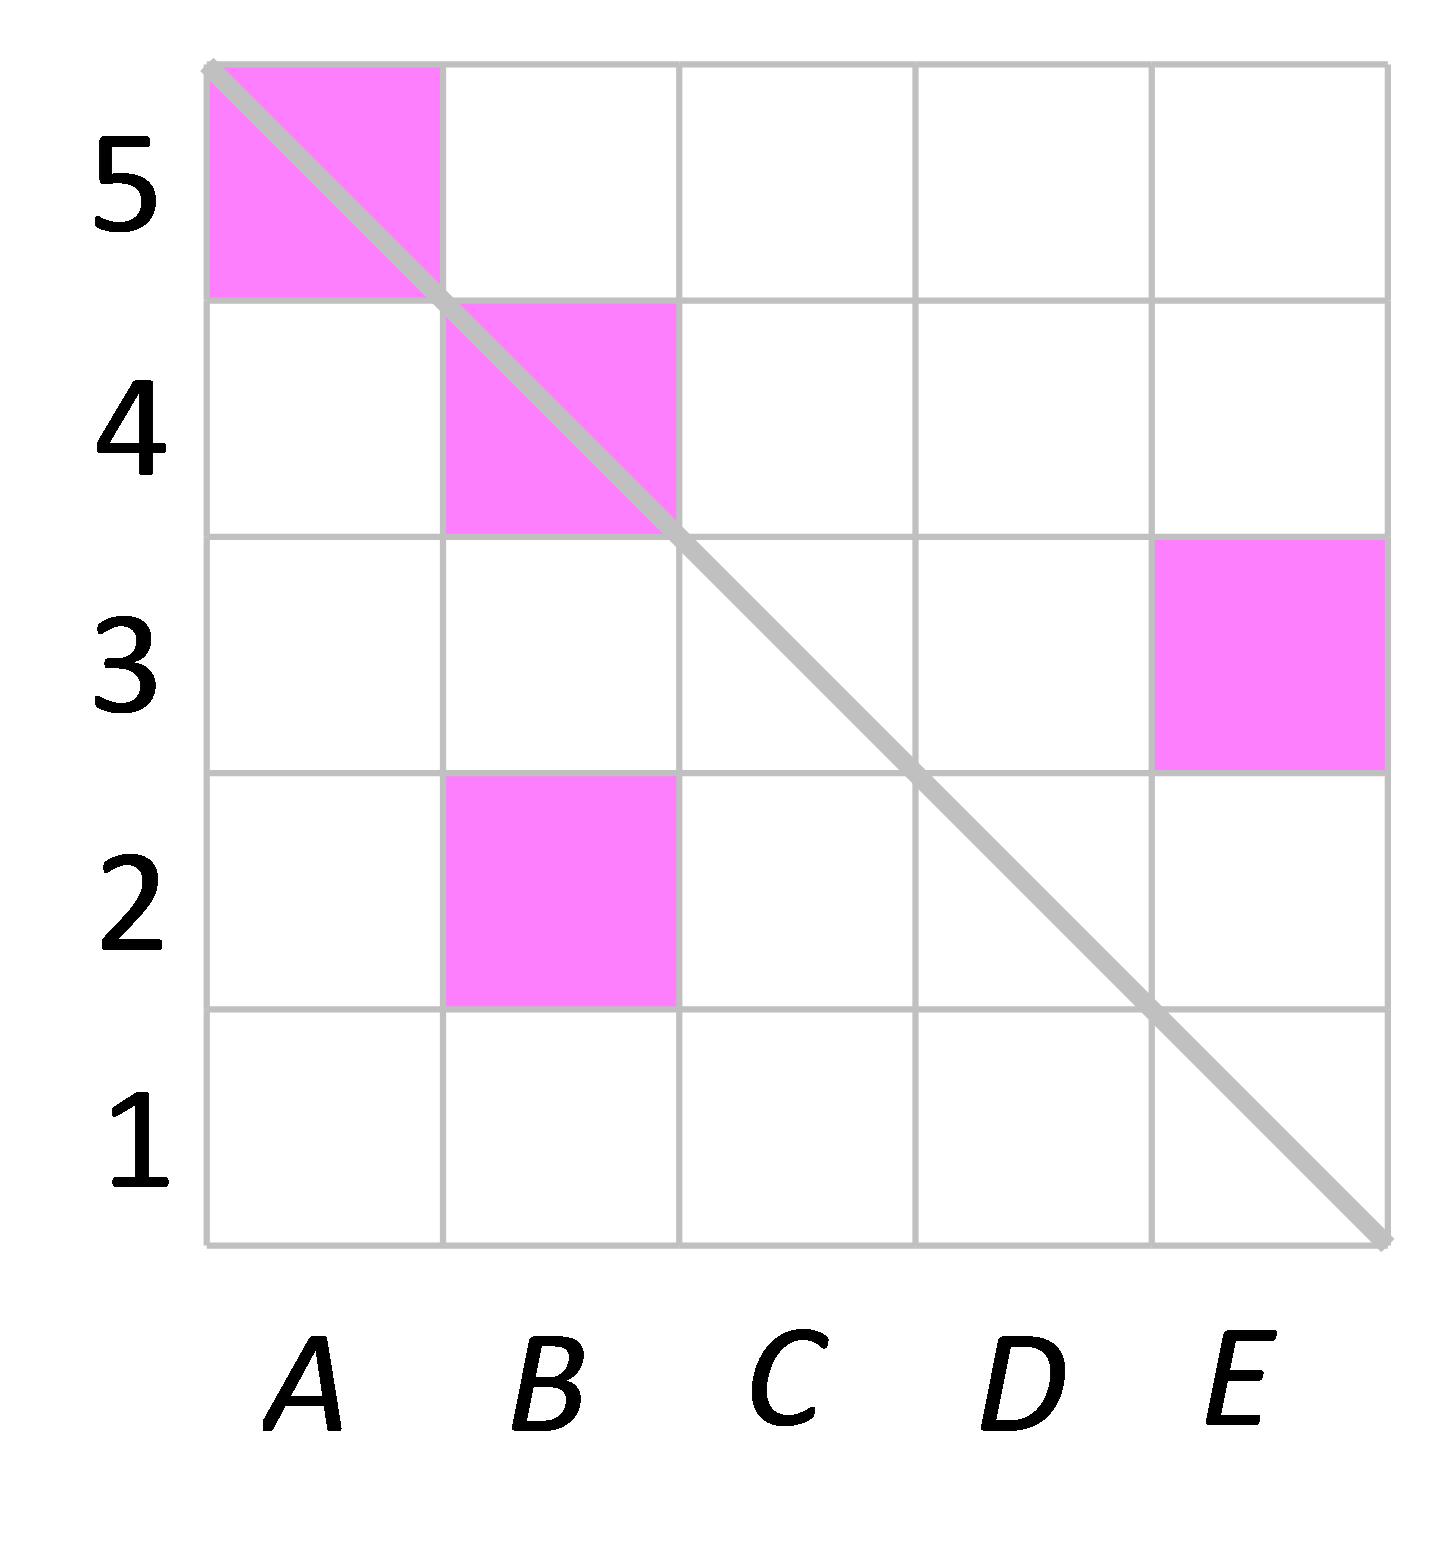 Na slici je prikaz kvadratne mreže s upisanim obojanim kvadratima.Vodoravni položaj je označen slovima A, B, C, D i E, a vertikalni brojevima 1, 2, 3, 4 i 5.Istaknuta je dijagonalaod gore lijevo ka dolje i desno.